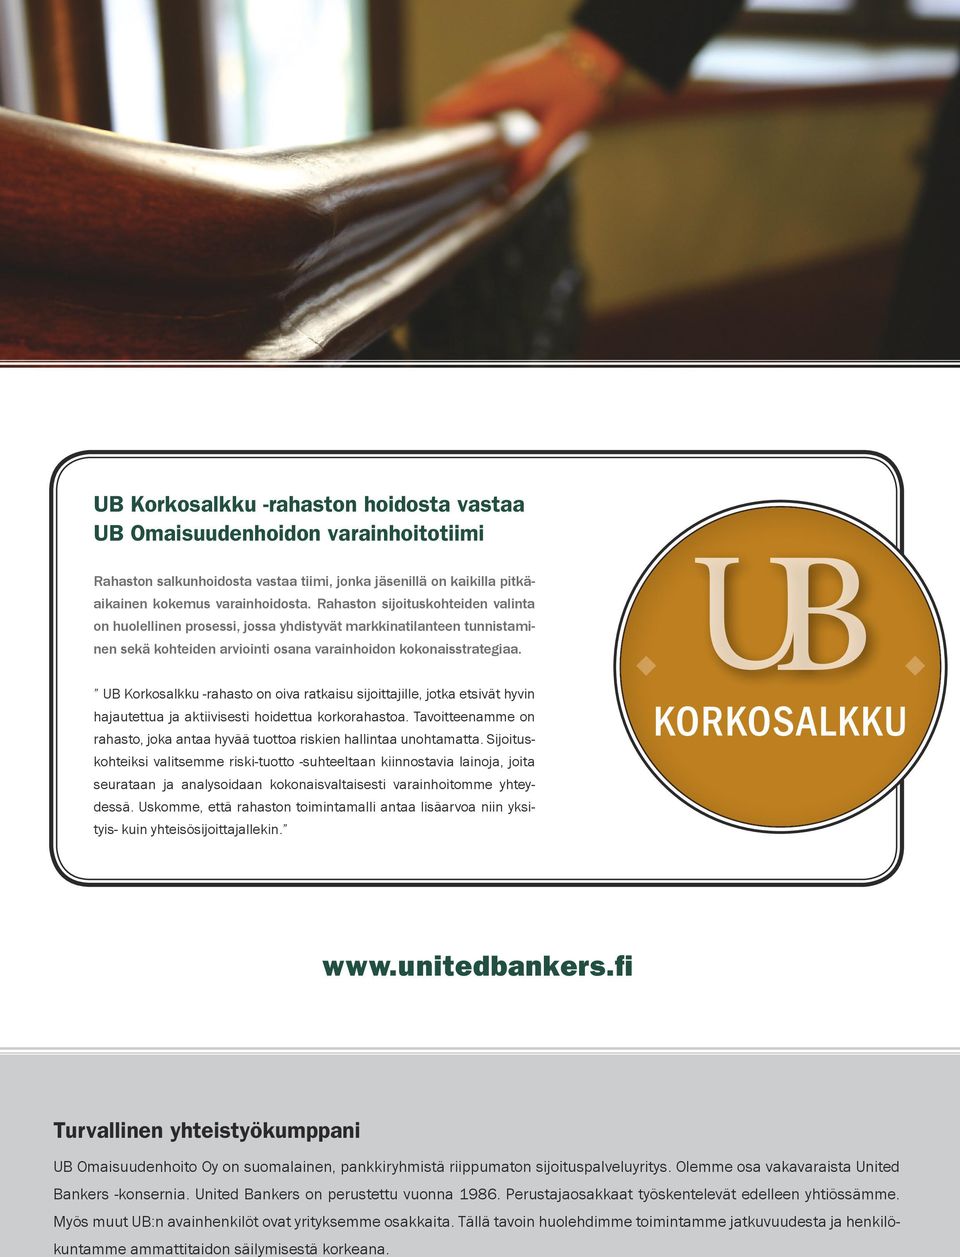 UB Korkosalkku -rahasto on oiva ratkaisu sijoittajille, jotka etsivät hyvin hajautettua ja aktiivisesti hoidettua korkorahastoa.